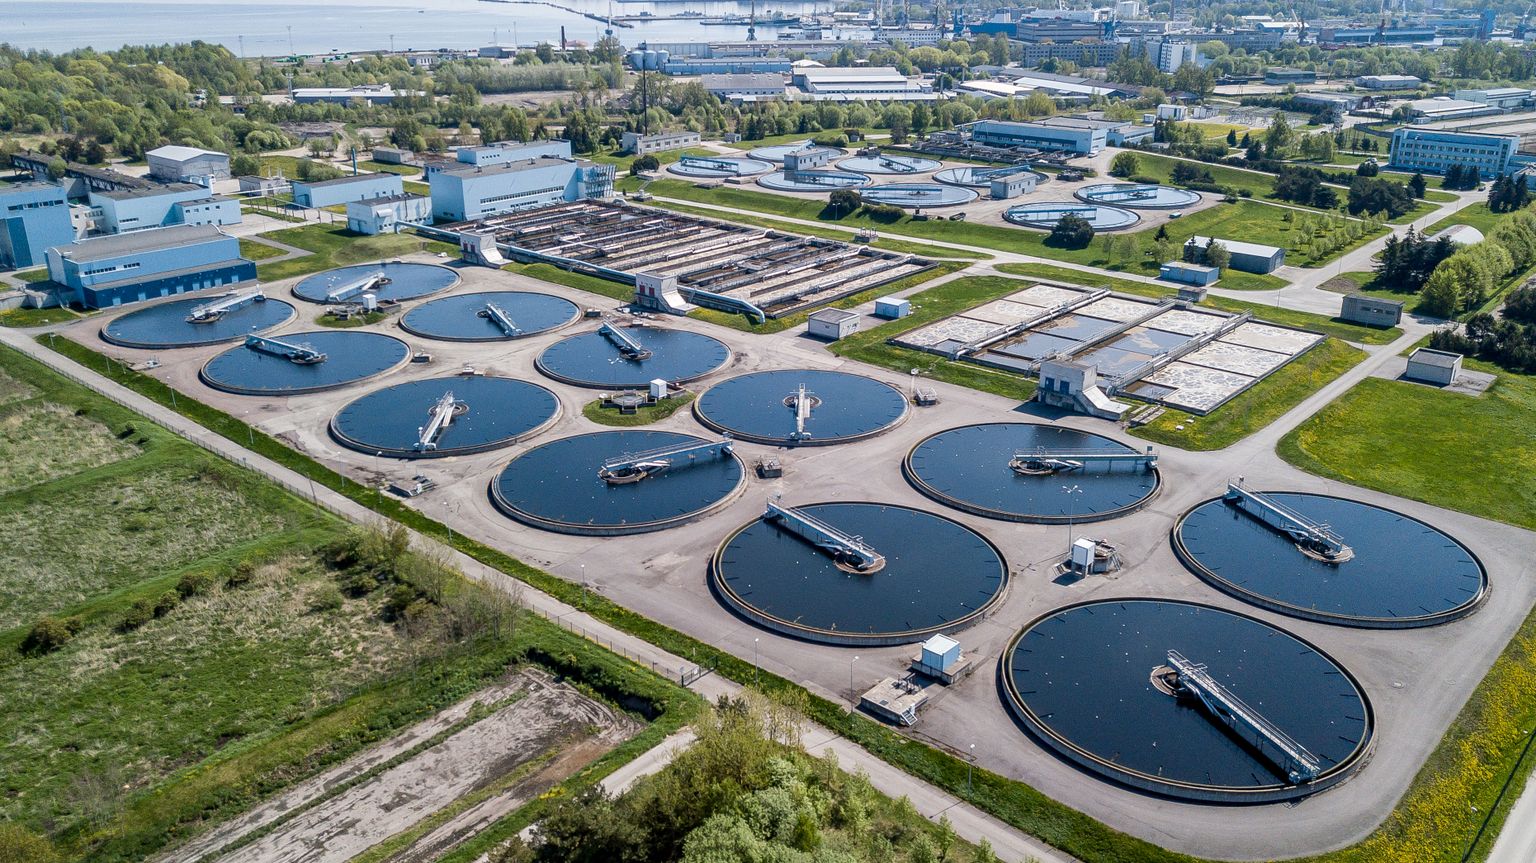 Paljasaare reoveepuhastusjaam (2018)

Paljassaare Wastewater Treatment Plant
FOTO:SANDER ILVEST/EESTI MEEDIA